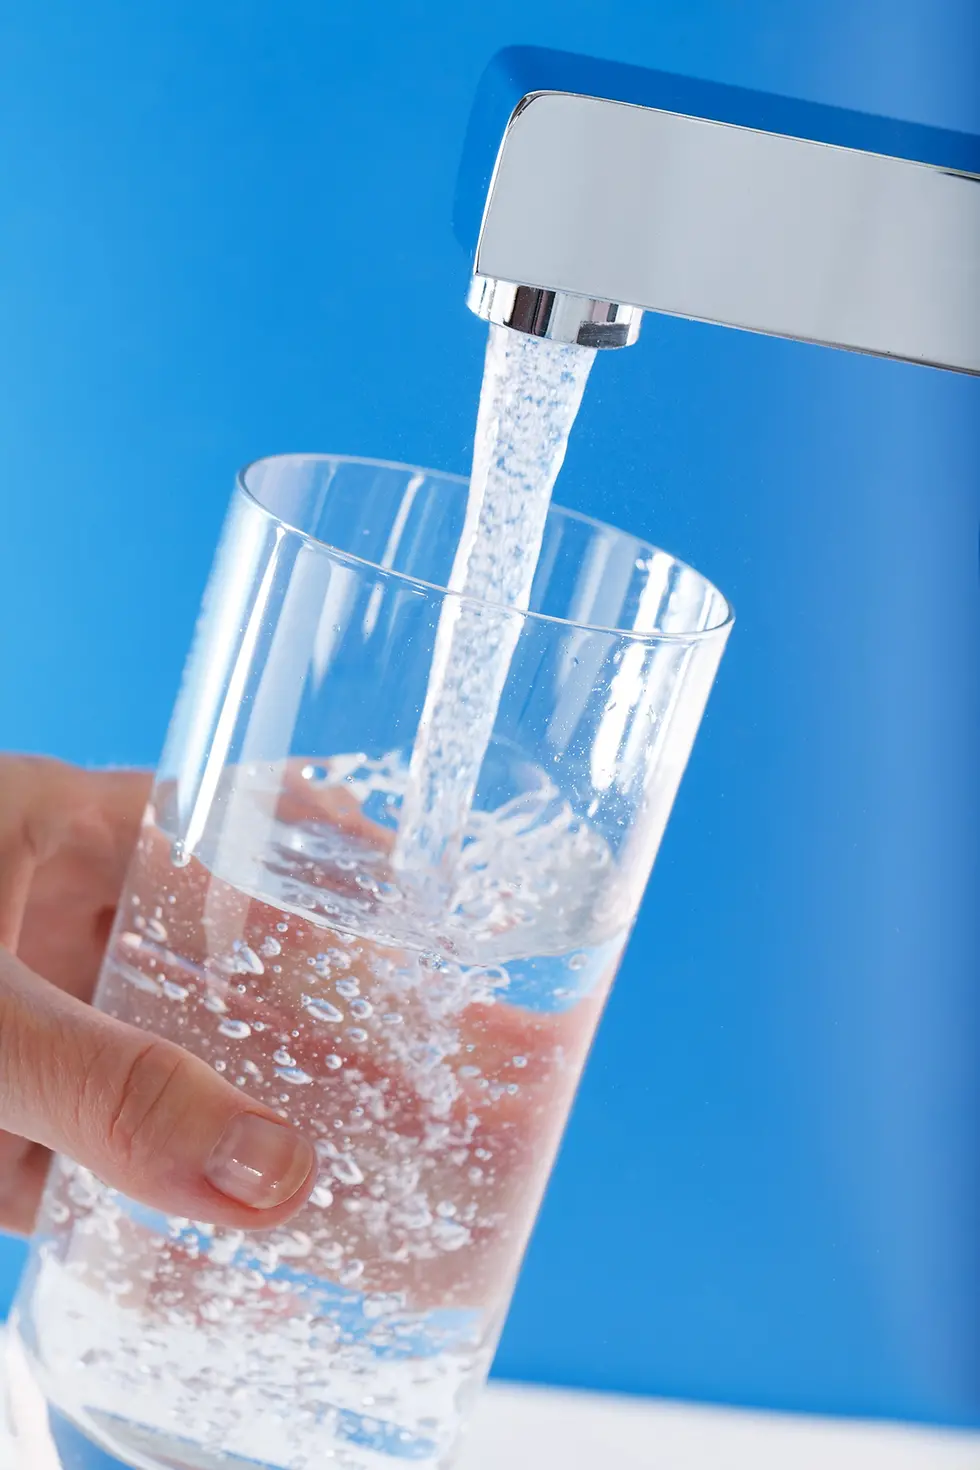 Henkel ofrece a los fabricantes de sistemas de filtración una amplia gama de soluciones de alto rendimiento - por ejemplo, para el tratamiento de aguas.